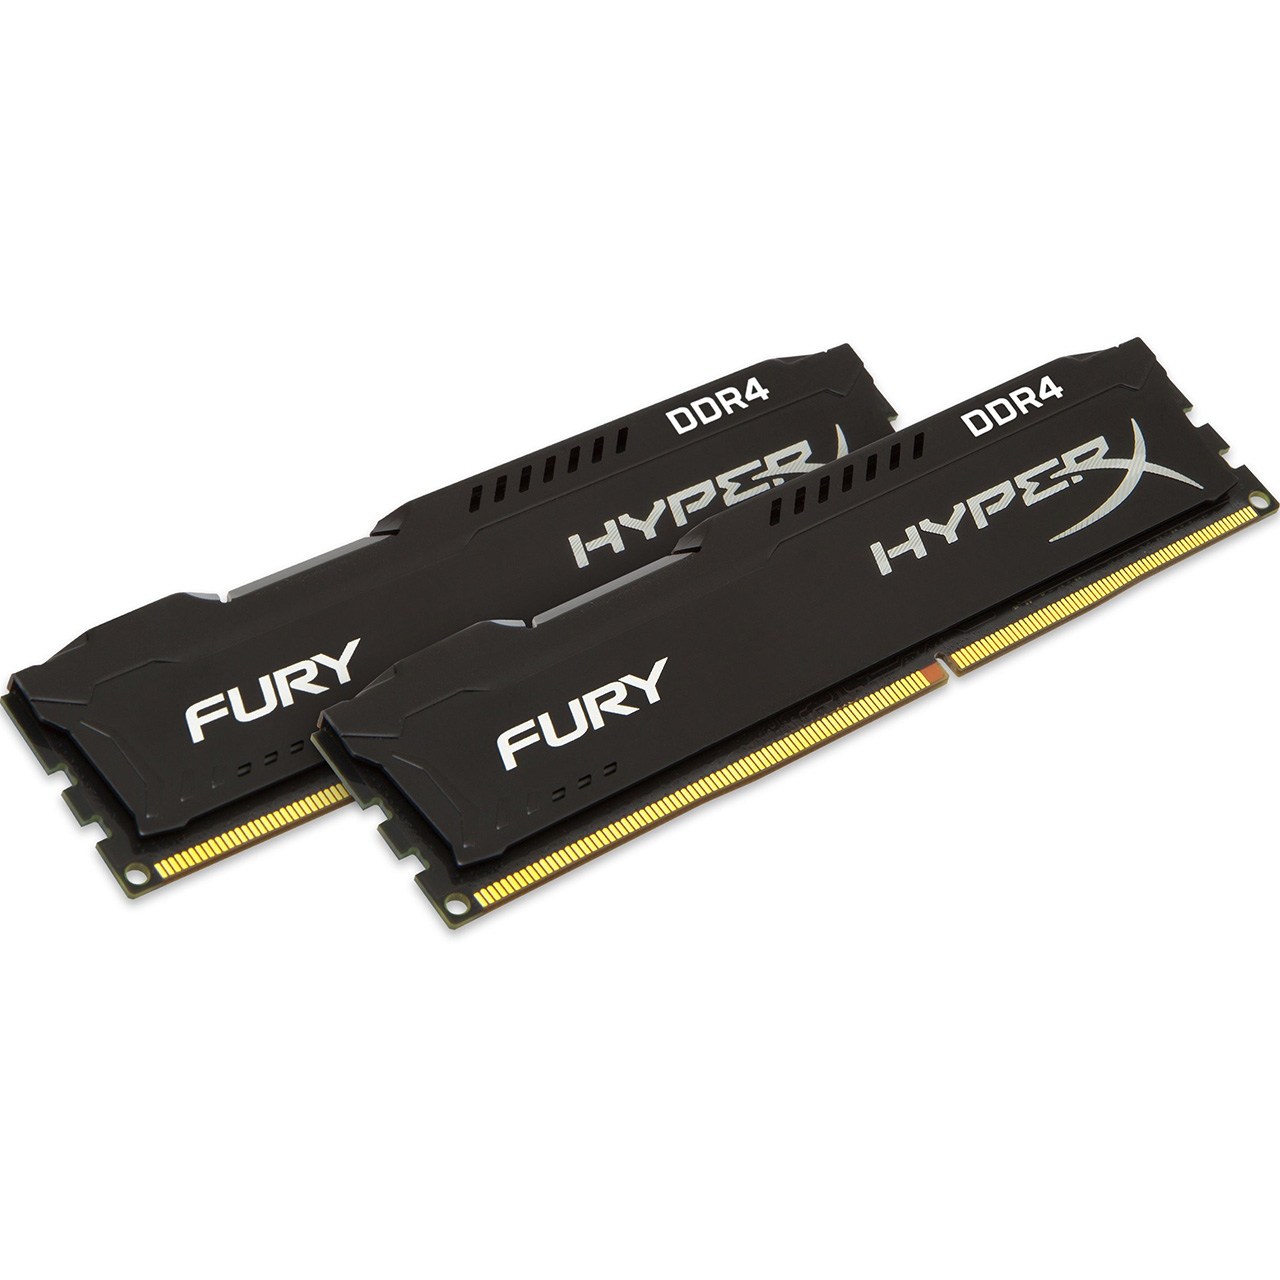 رم کامپیوتر کینگستون مدلHyperX Fury DDR4 2400MHz CL15 ظرفیت 32 گیگابایت